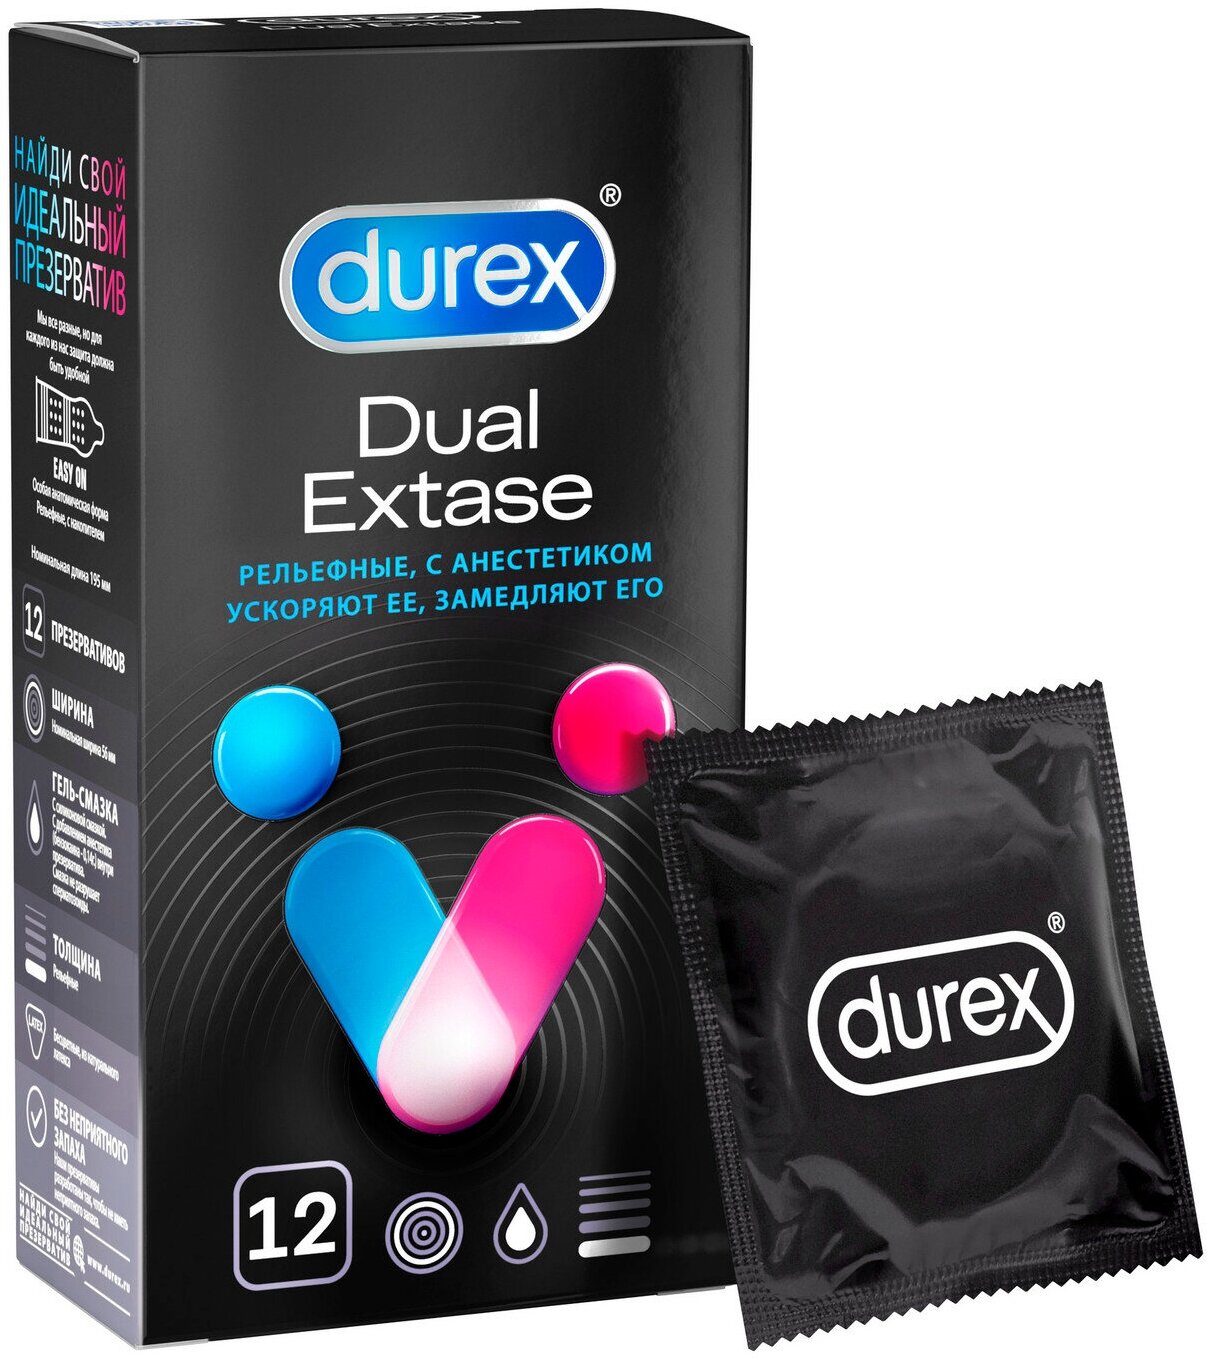 Презервативы Durex Dual Extase рельефные, с анестетиком 12 шт.